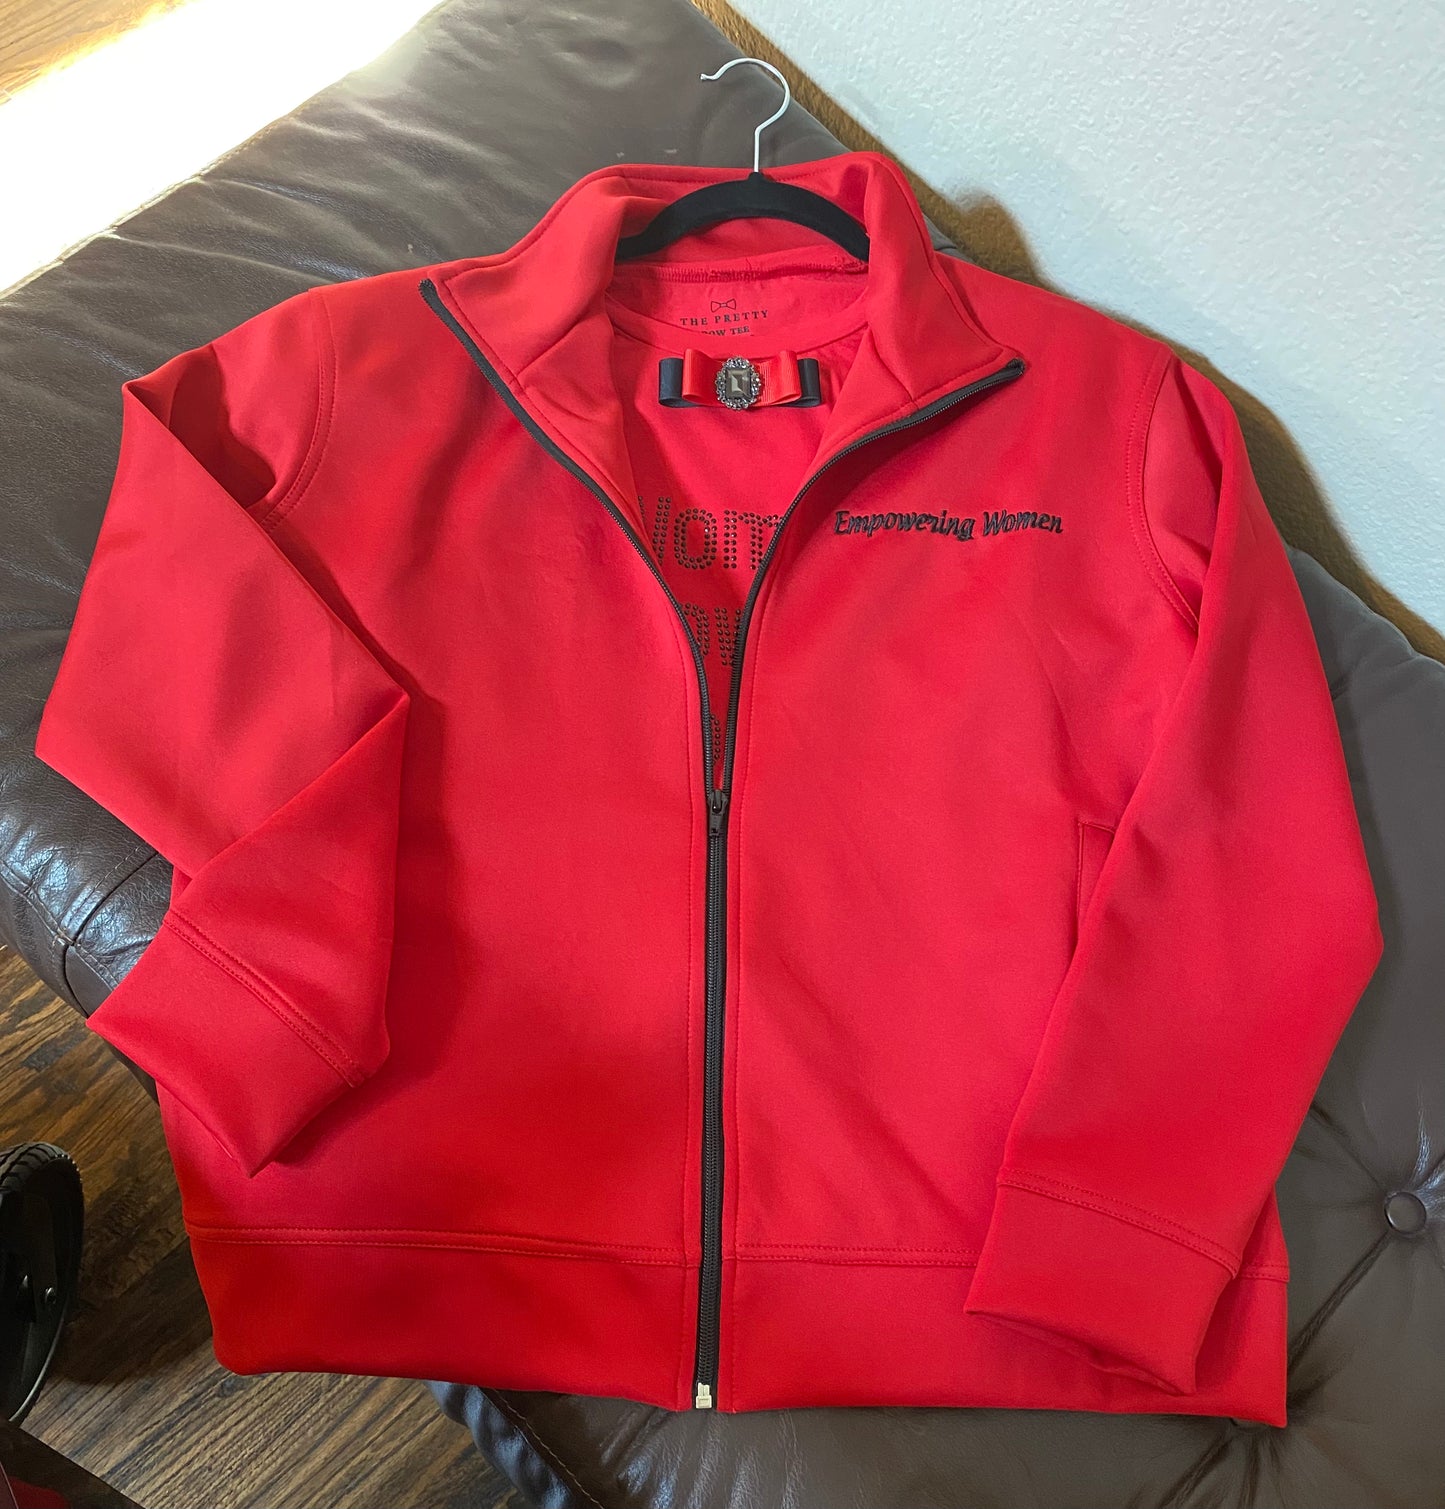 Signature Jacket - Red Jacket